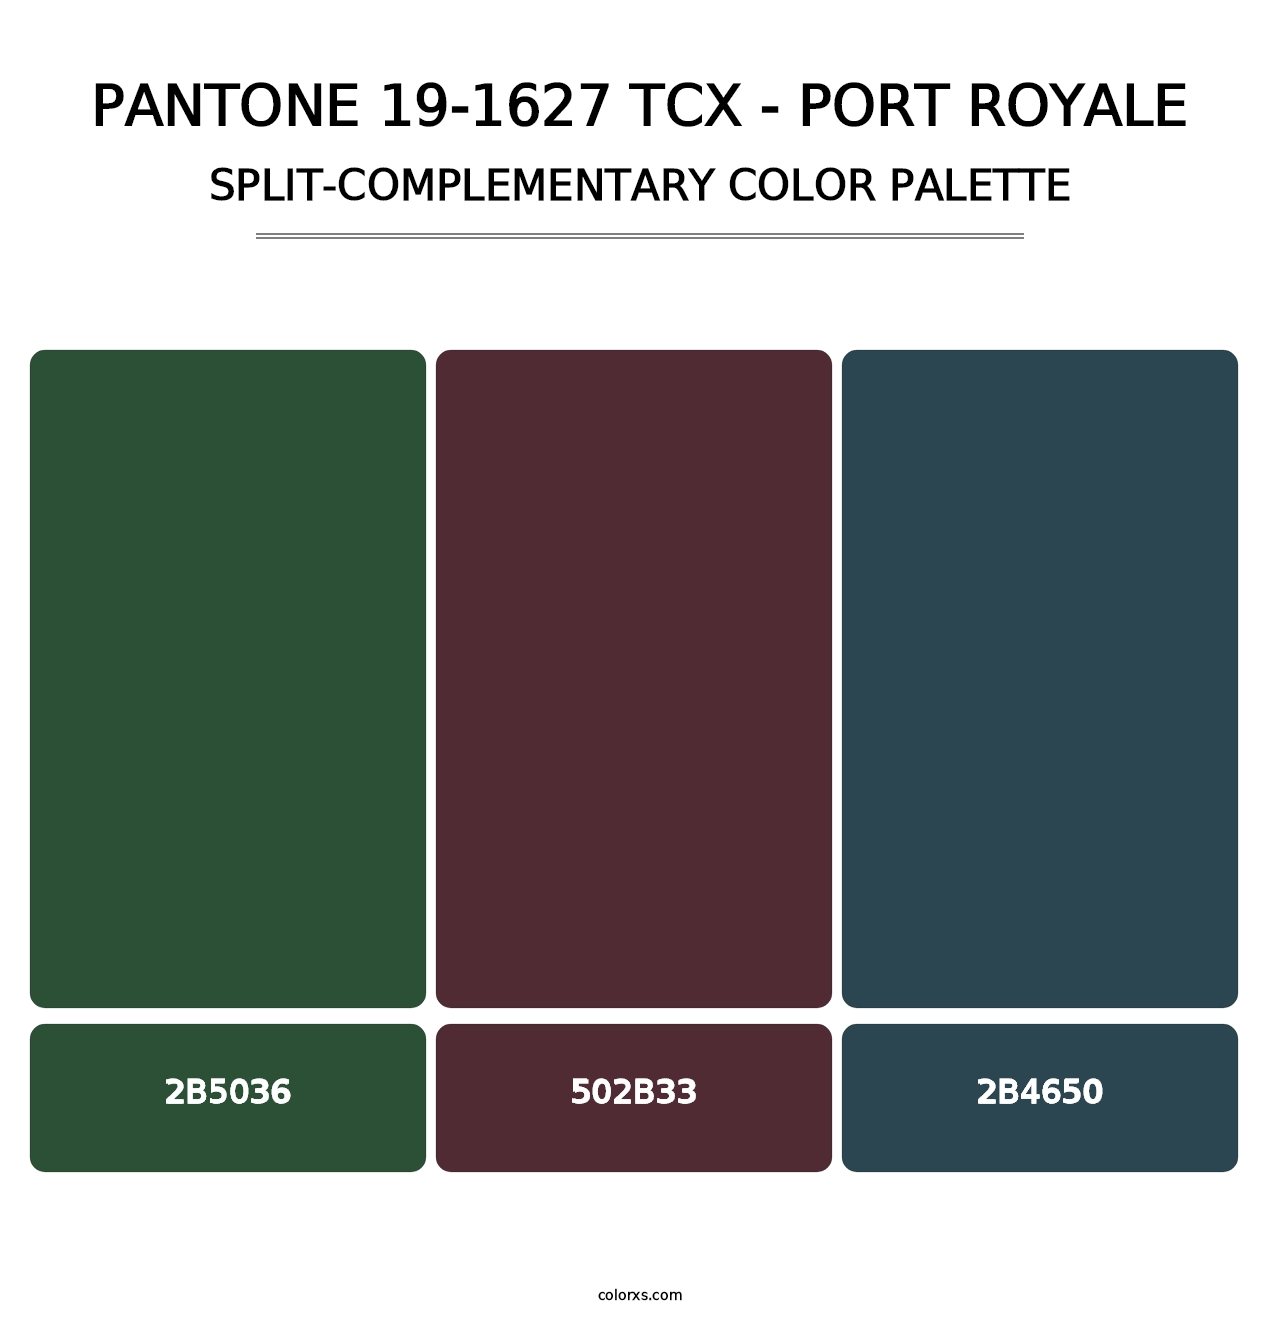 PANTONE 19-1627 TCX - Port Royale - Split-Complementary Color Palette